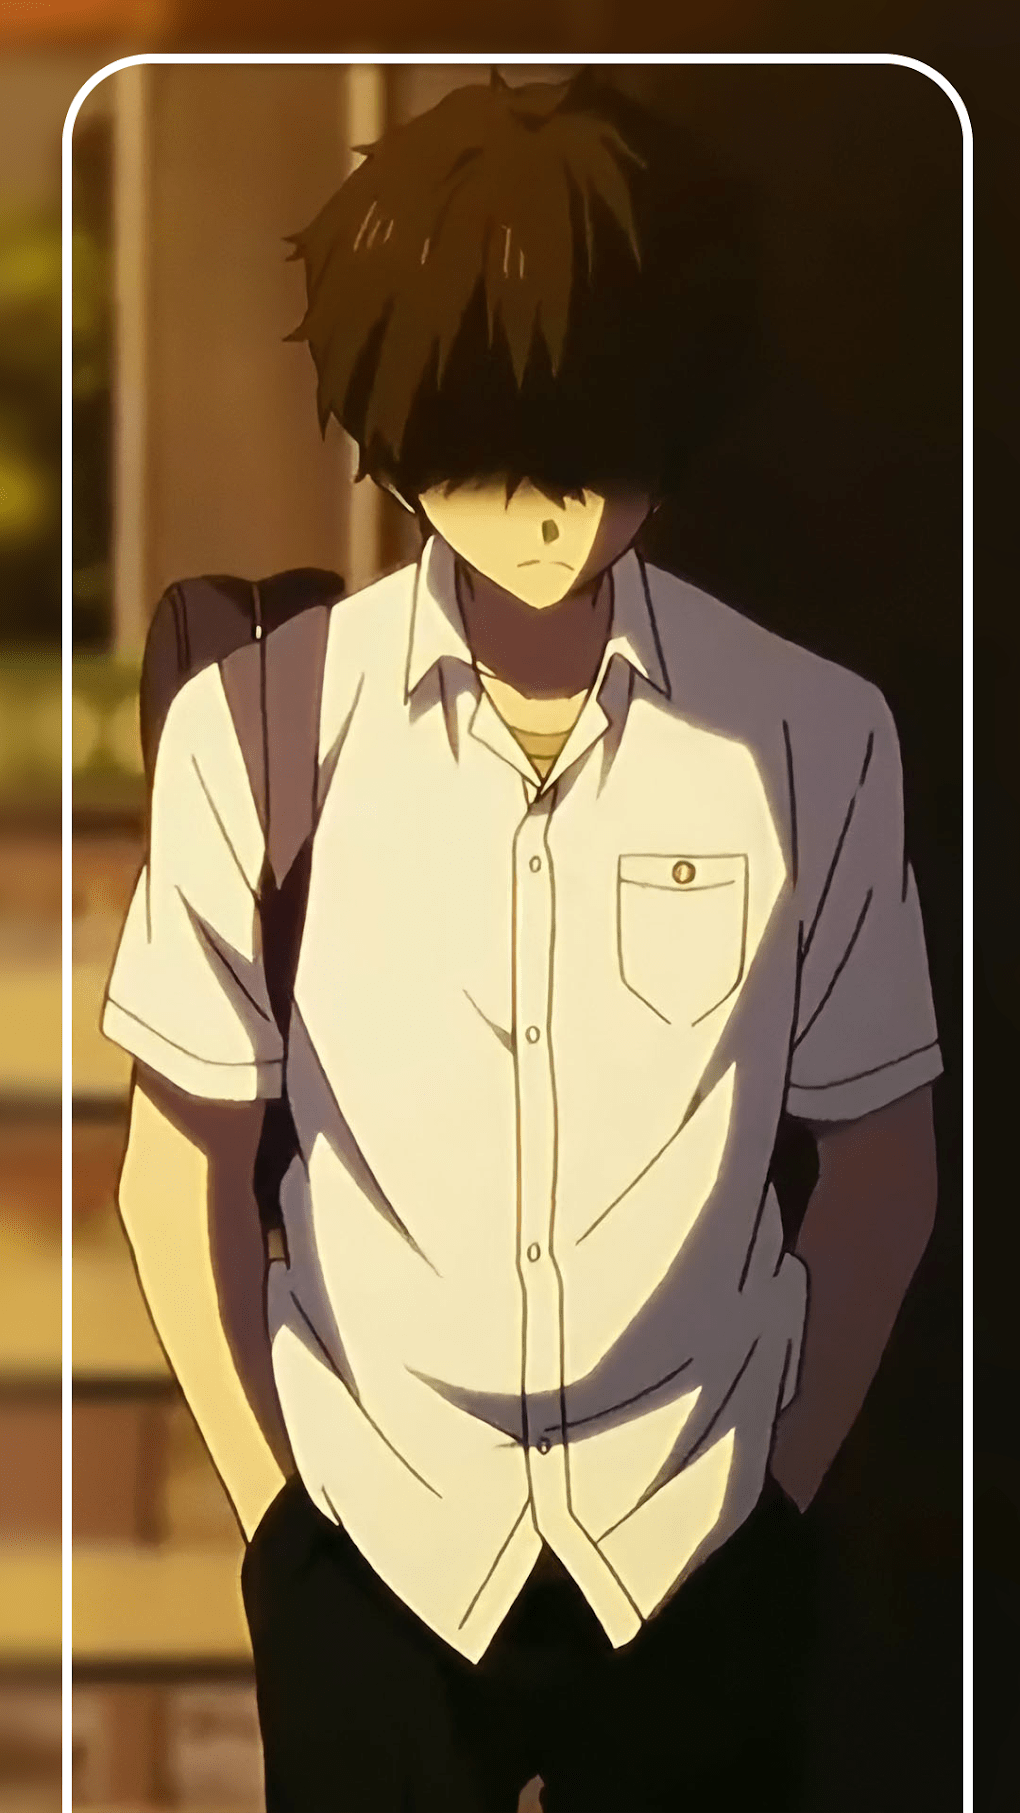 100+] Sad Boy Anime Wallpapers